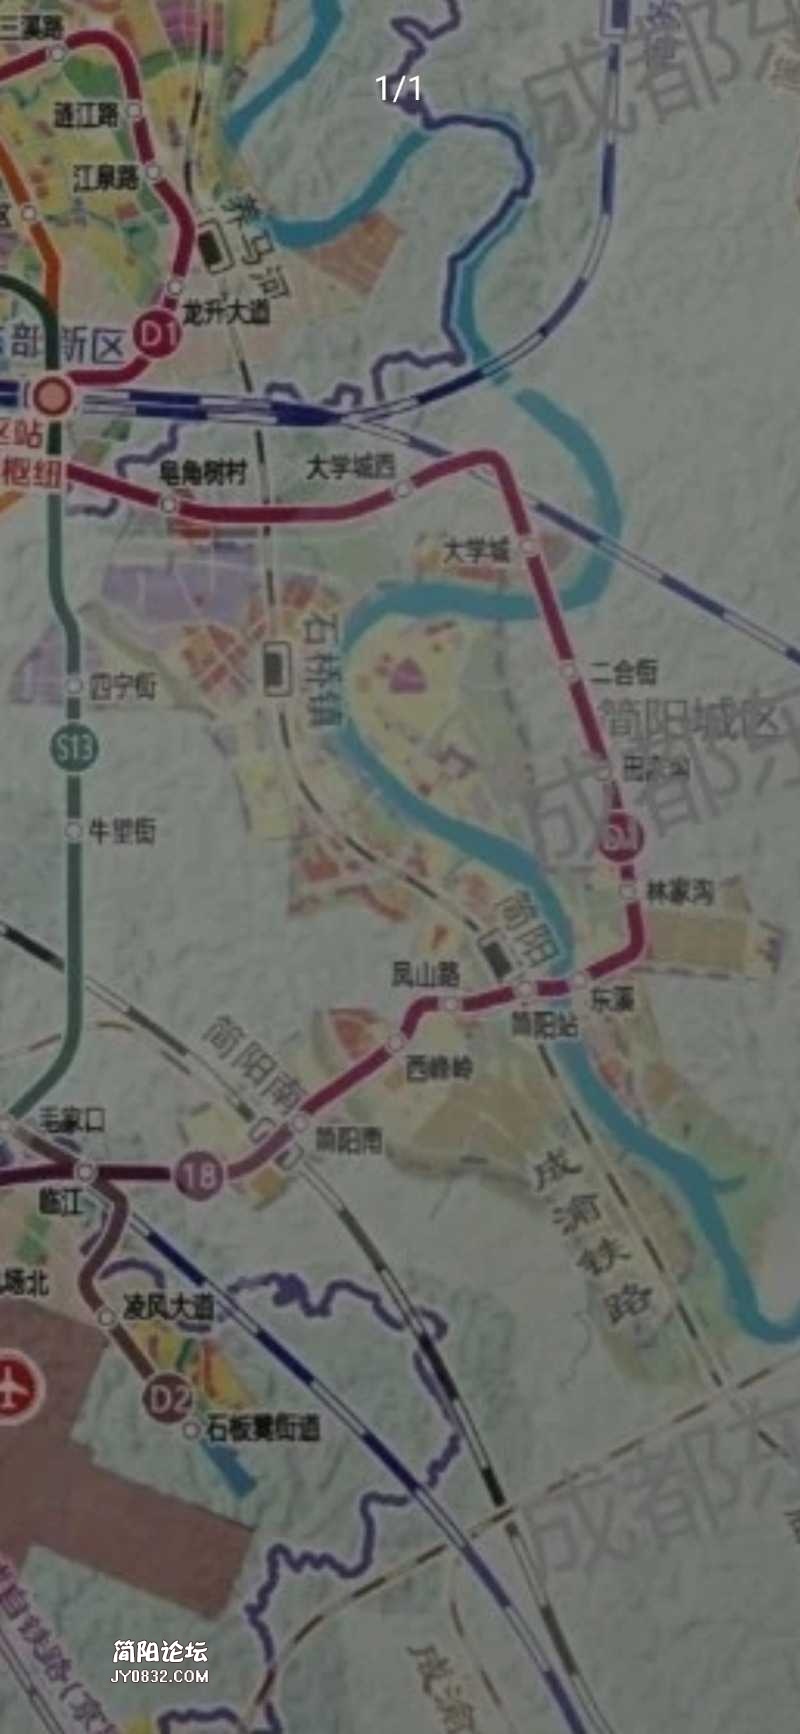 这张地铁规划图有点儿意思简阳城区都是走的无人区